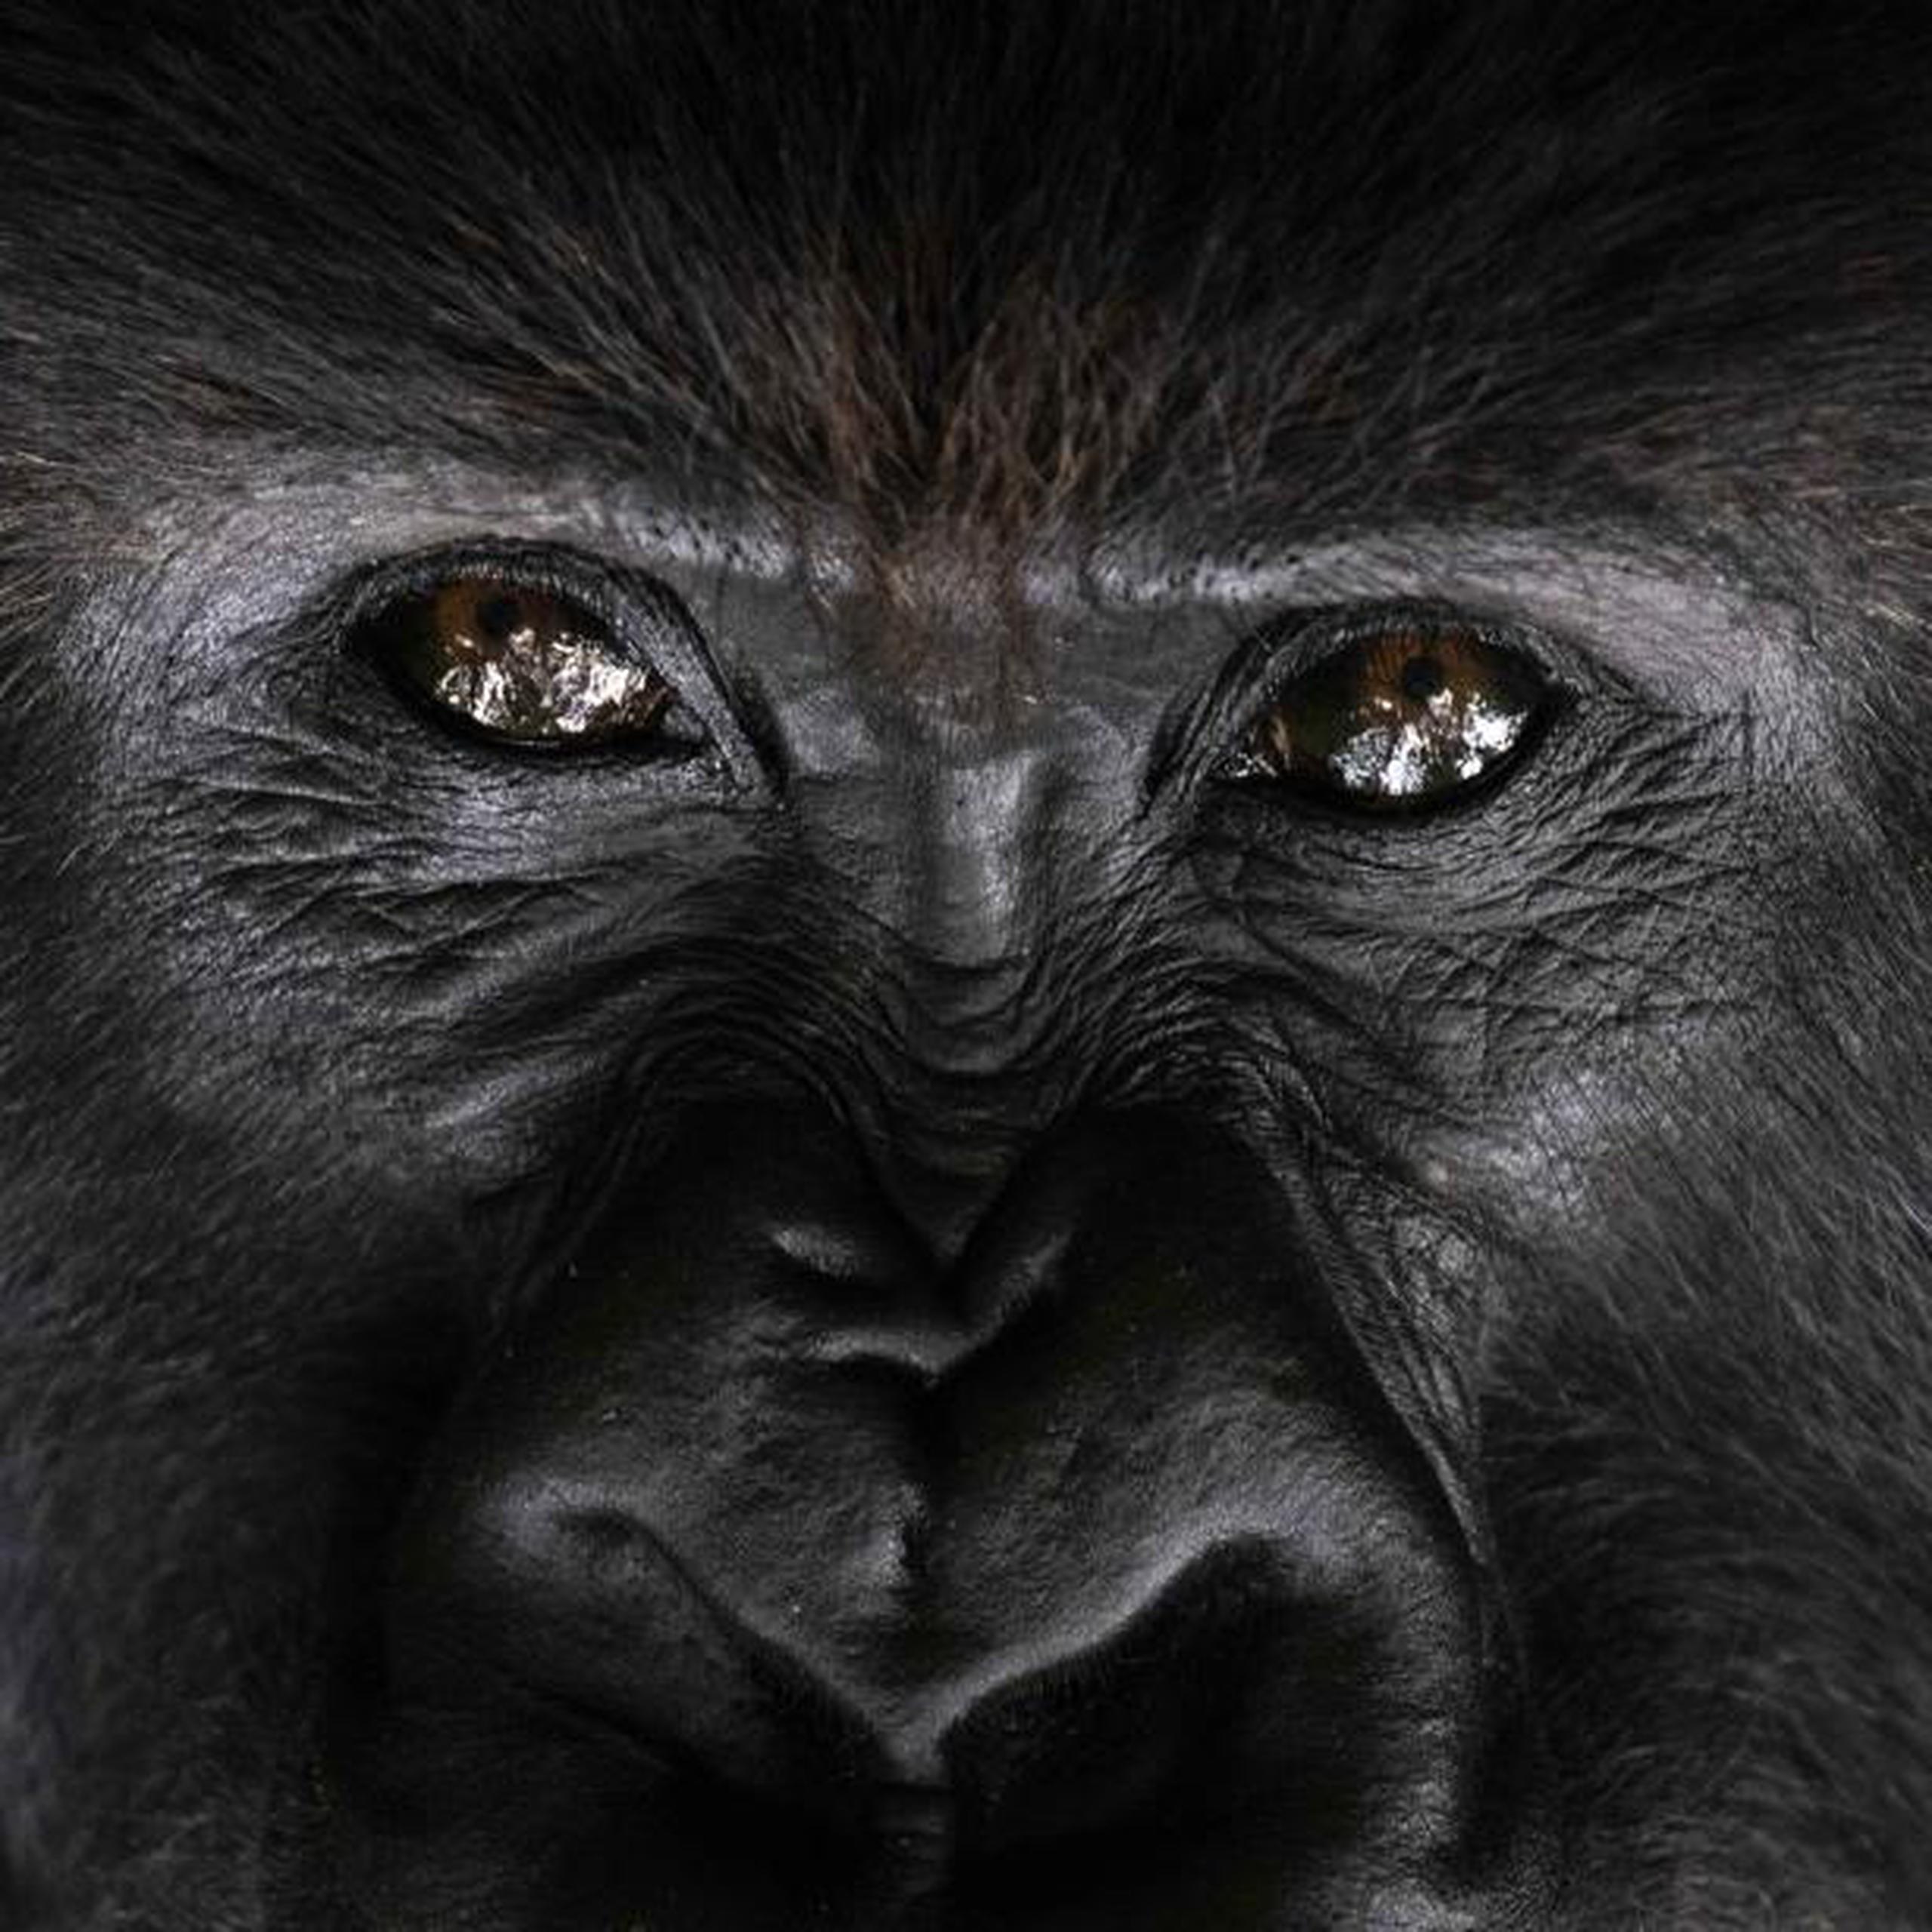 La idea de usar el turismo para financiar los esfuerzos por evitar la extinción de los gorilas fue bastante cuestionada cuando la plantearon por primera vez los conservacionistas Bill Weber y Amy Vedder en los años 70 y 80. (AP)